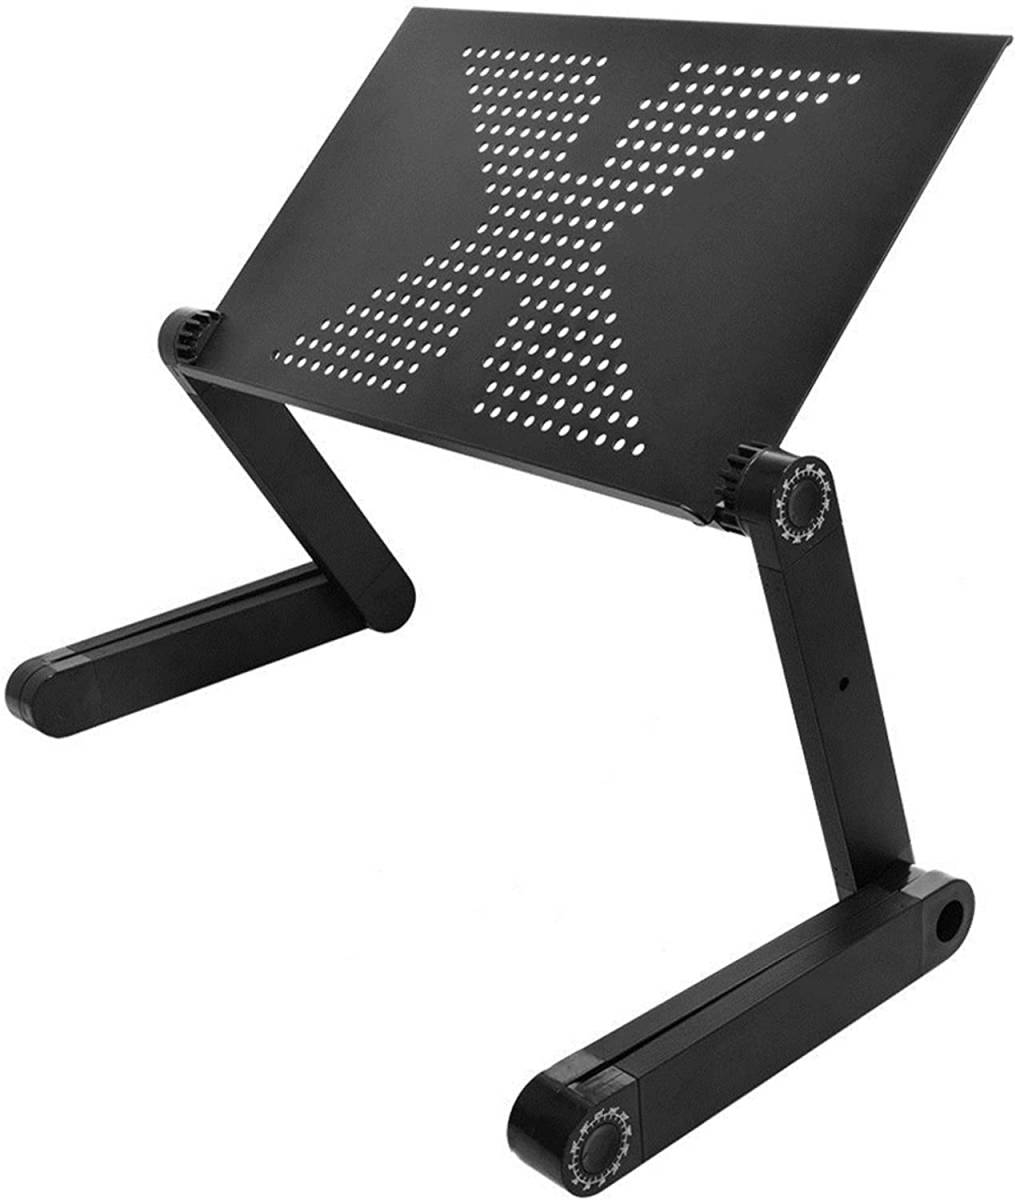  подставка для персонального компьютера складной подставка для ноутбук 360 раз настройка возможность ( aluminium | угол высота нет -ступенчатый регулировка ) боковой стол 